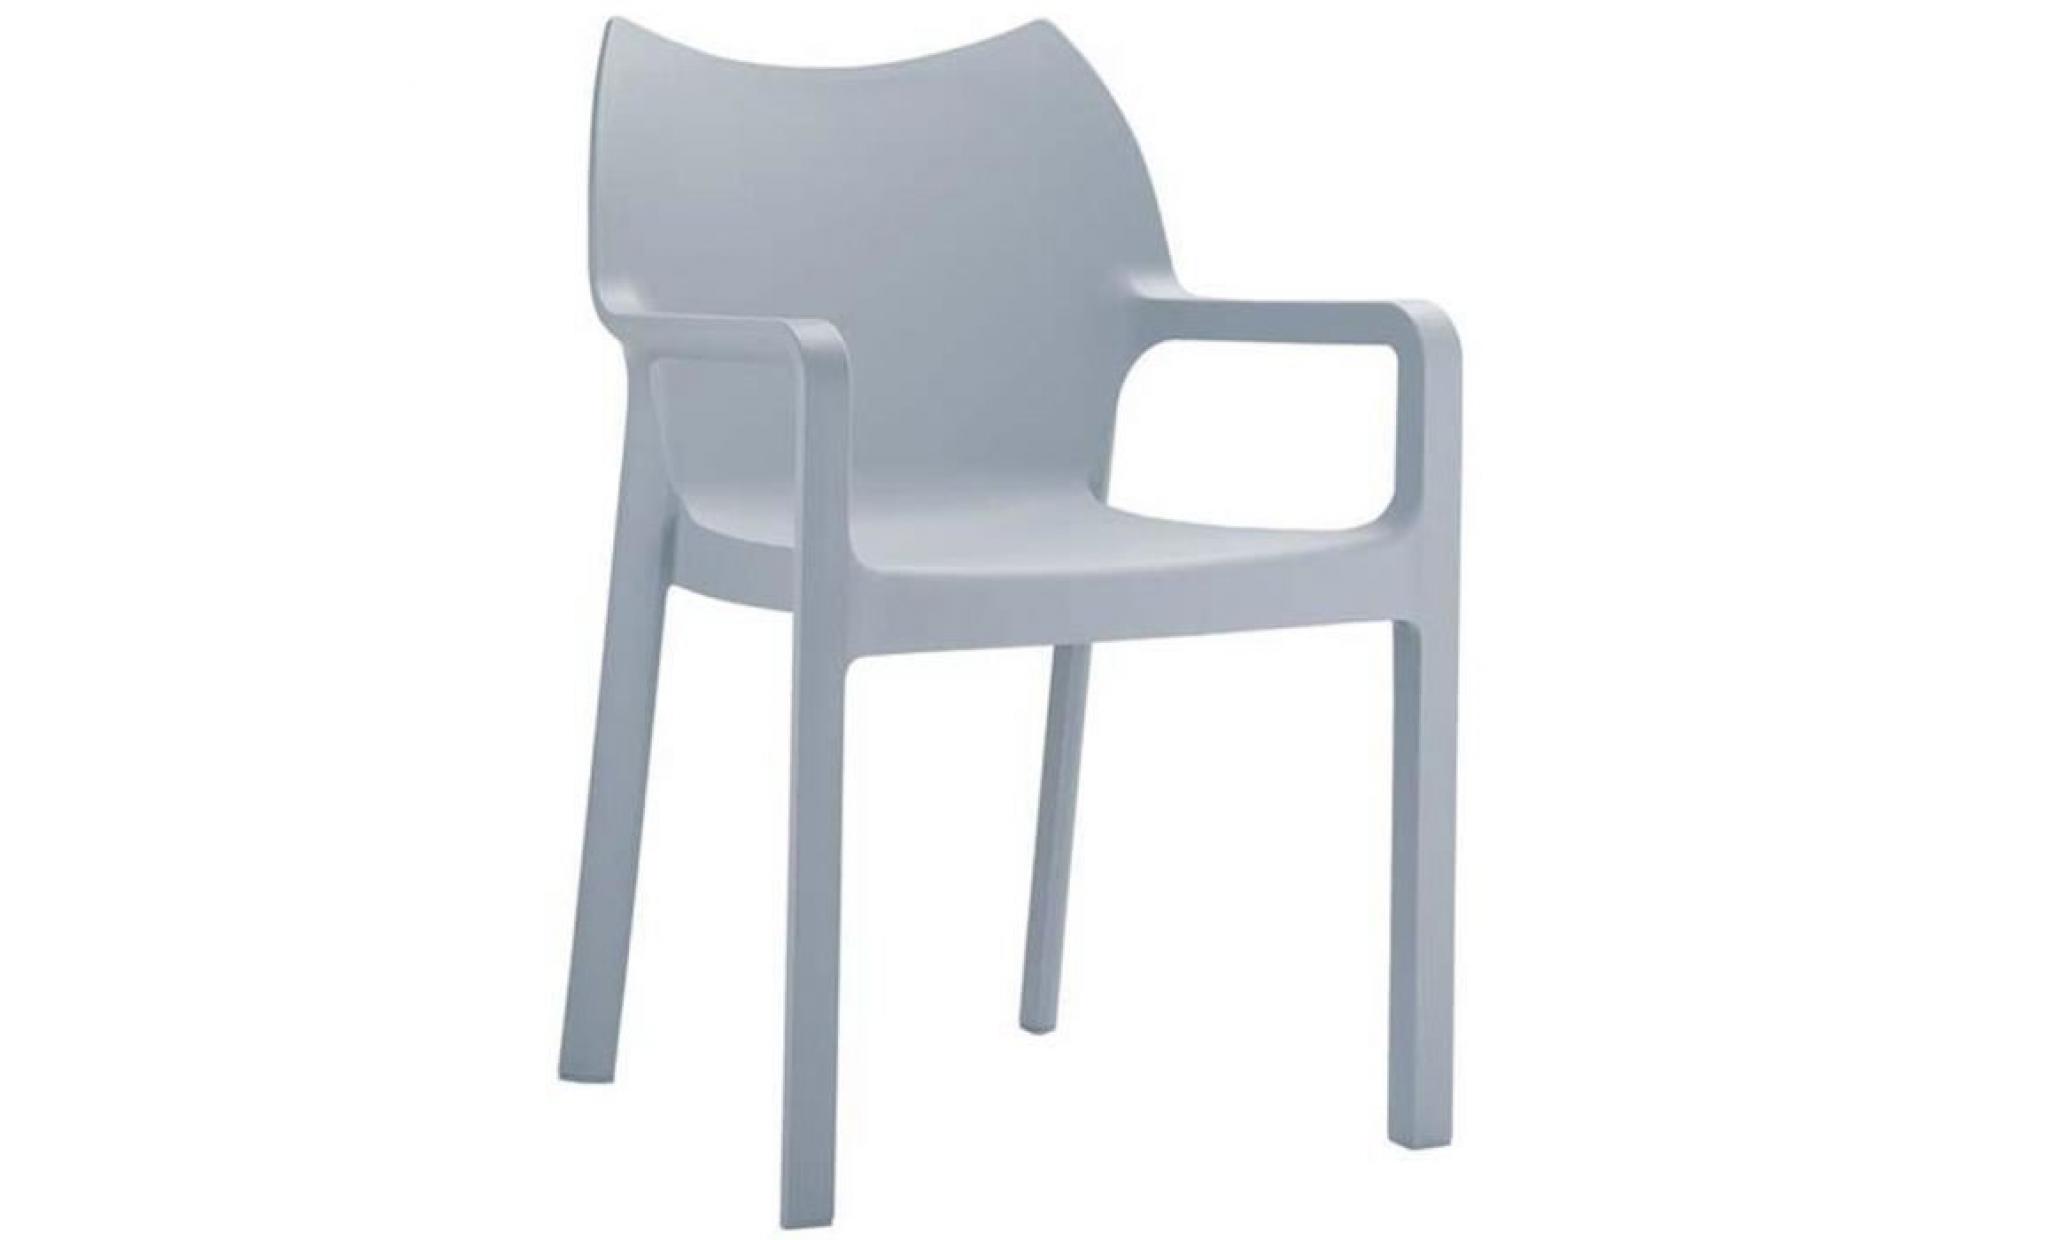 Chaise de jardin empilable en plastique gris clair, Dim : H81 x P50 x L44 cm